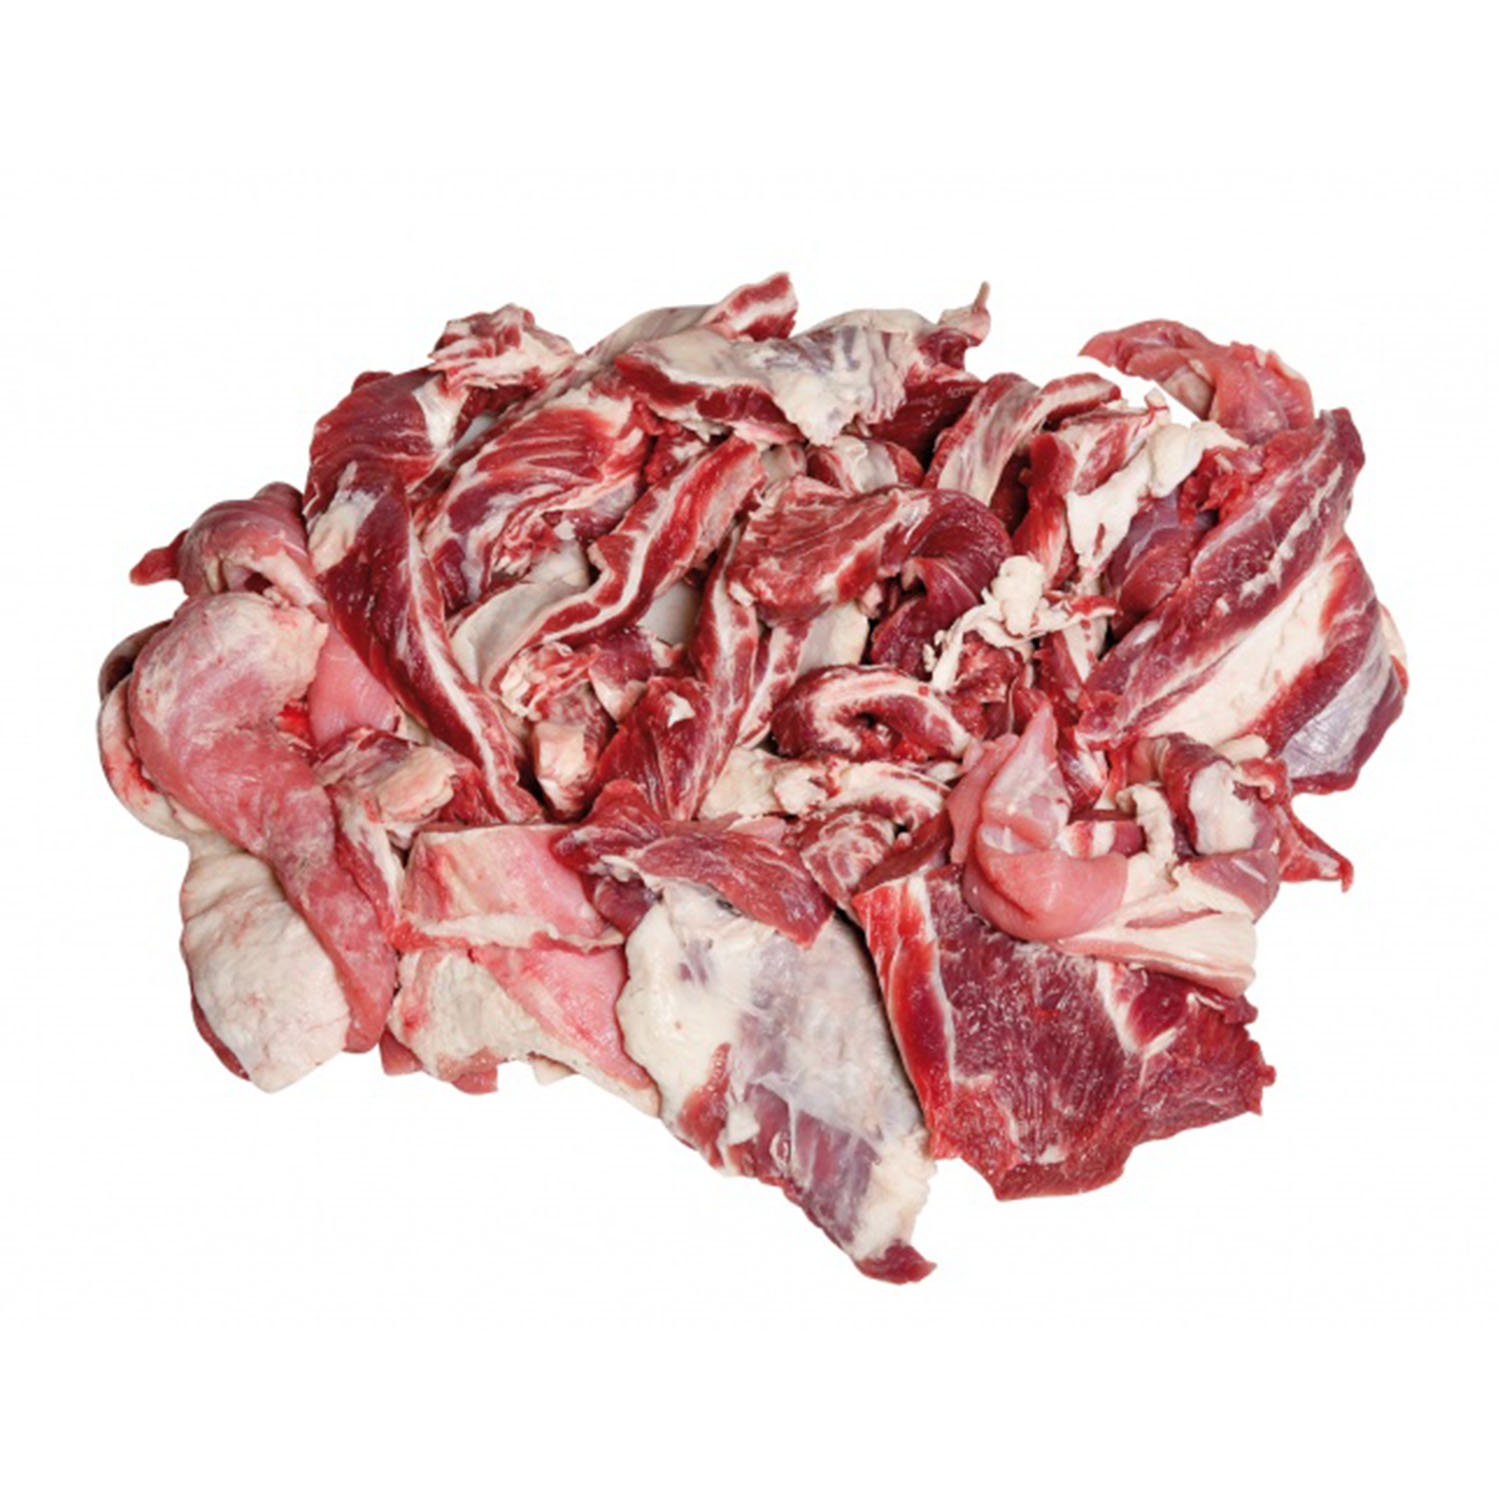 Купить говядину 5 кг. Тримминг котлетное мясо. Котлетное мясо говядины.